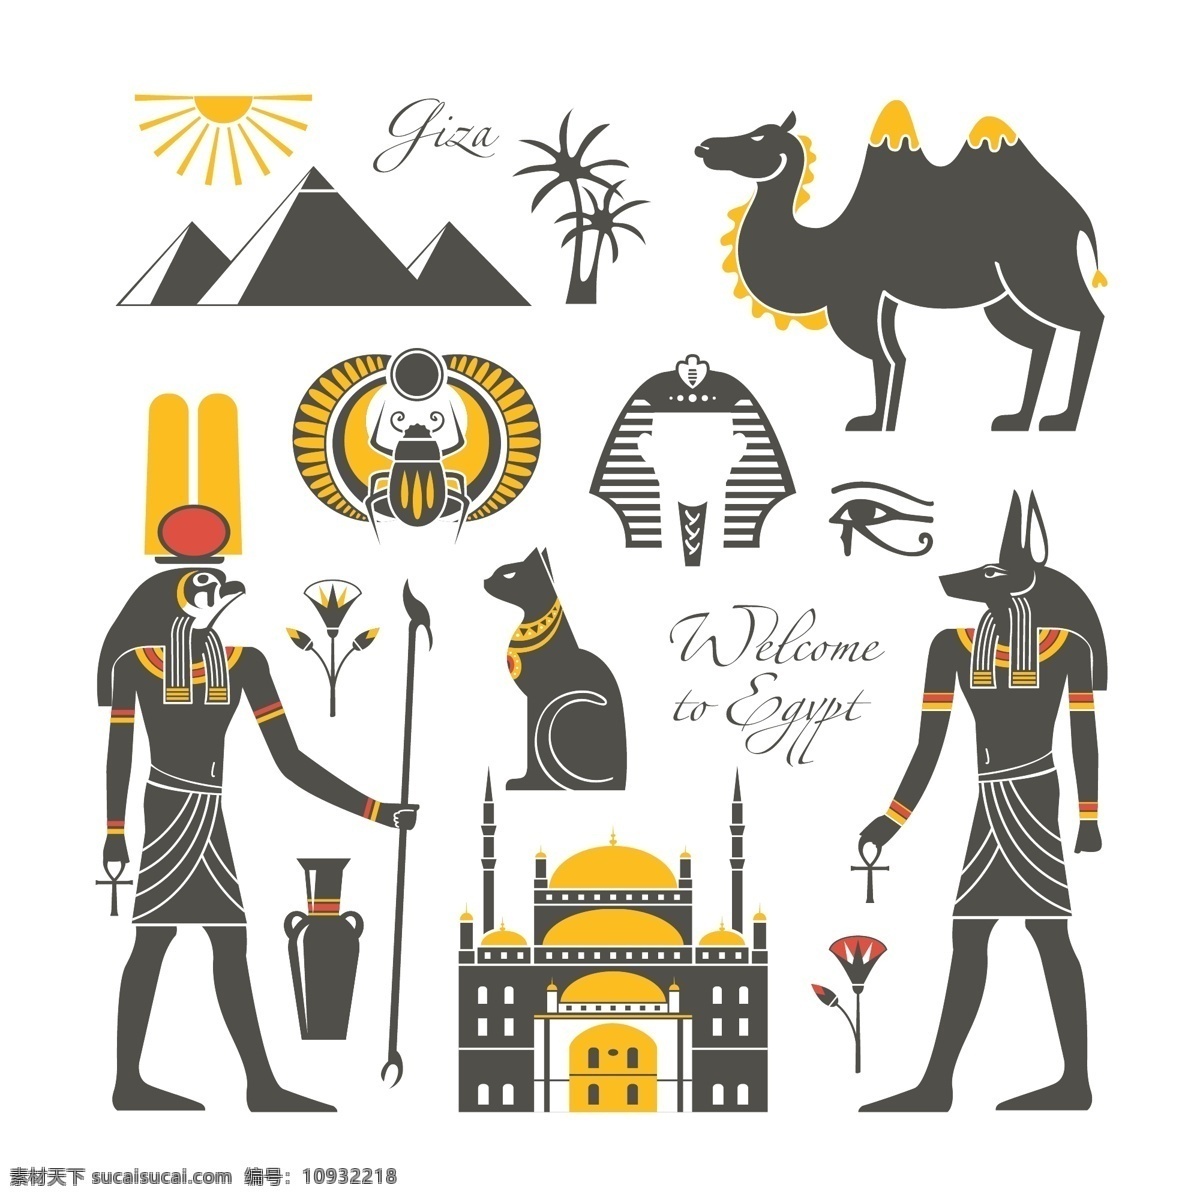 古埃 文化 符号 埃及文字 古埃及符号 罗马 古罗马 非洲动物 人物象形文字 象形文字 古埃及文化